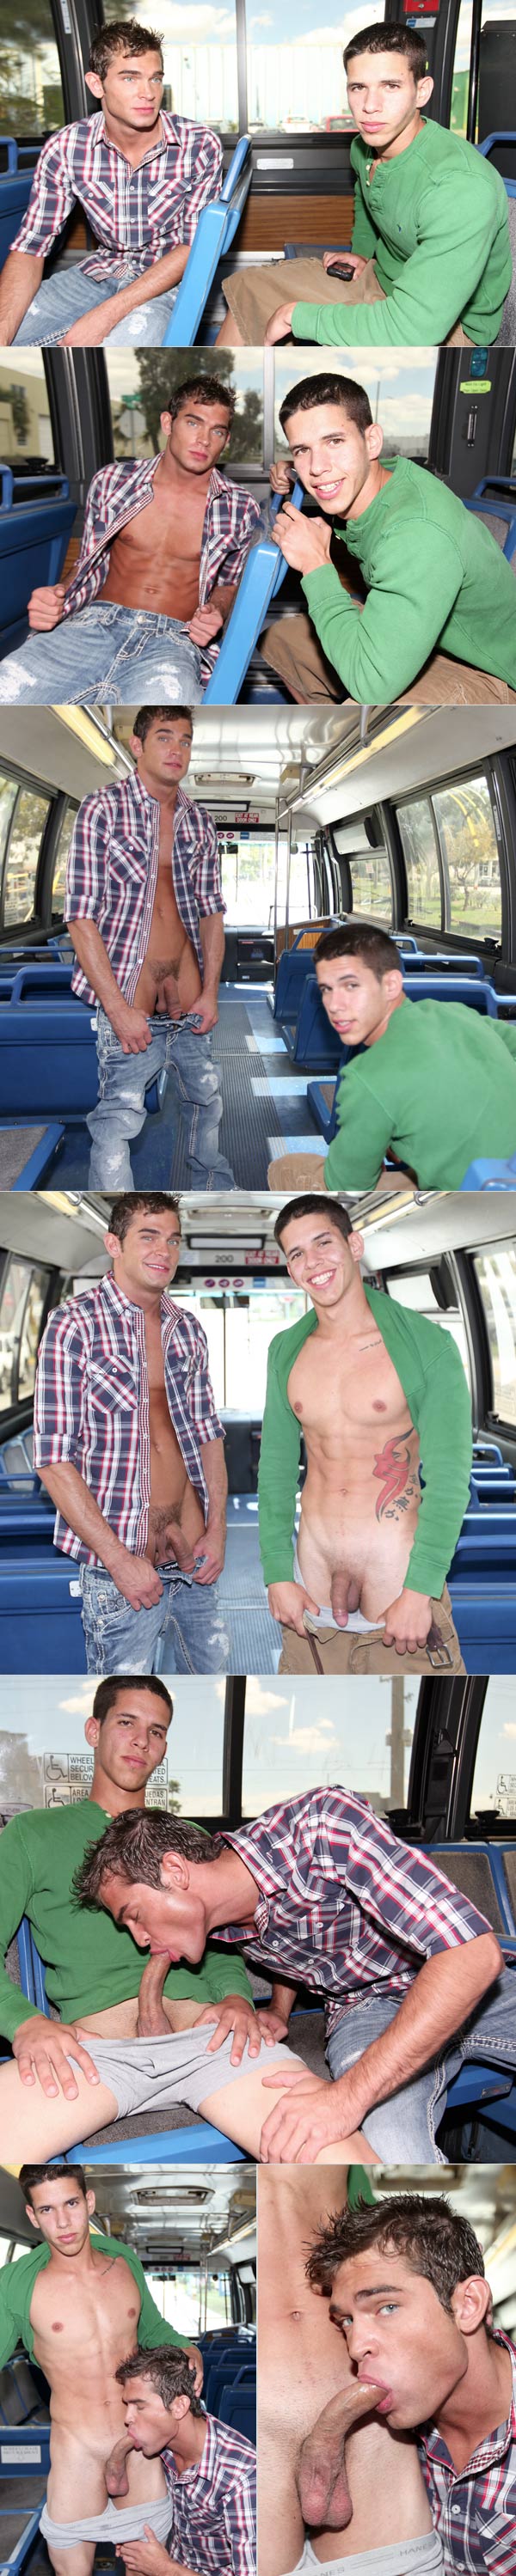 Latino Goes Gay at Project City Bus